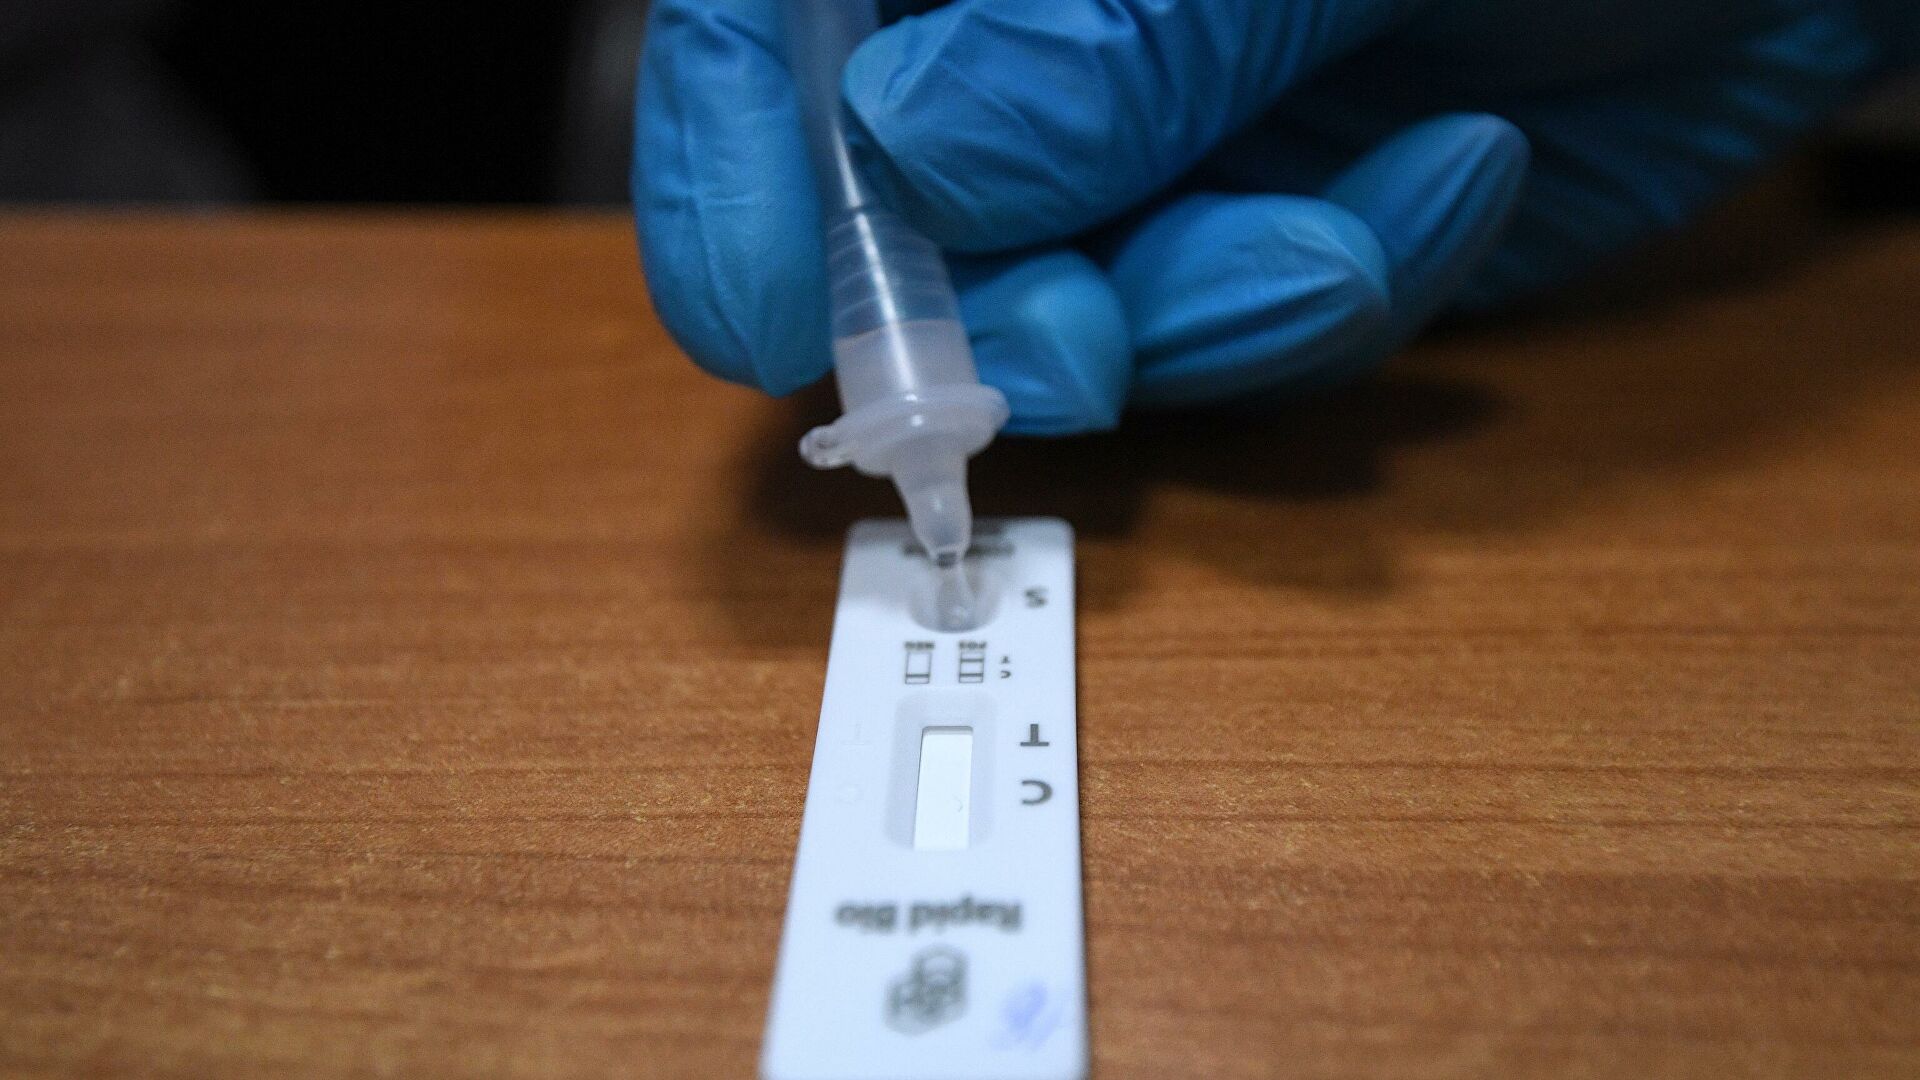 В России за неделю в 2,4 раза выросли продажи экспресс-тестов на коронавирус